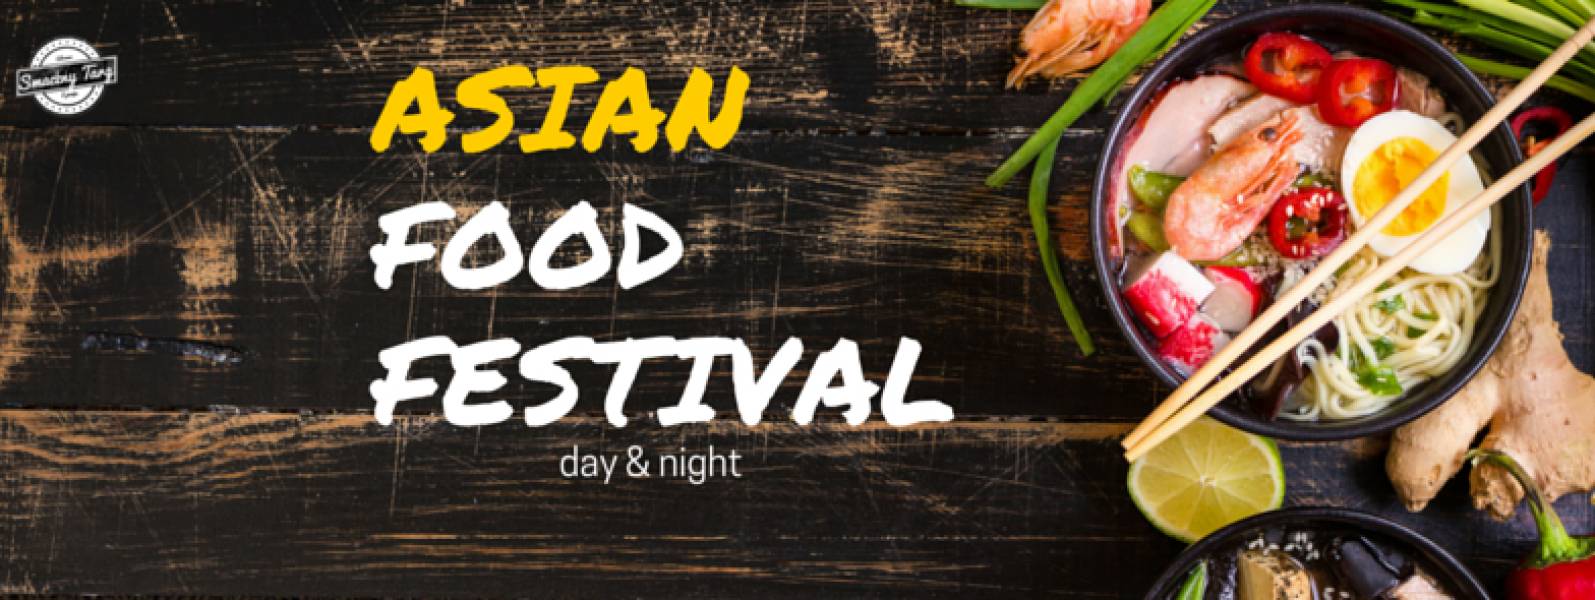 16-17 LIPCA – ASIAN FOOD FESTIVAL DAY & NIGHT– WARSZAWA